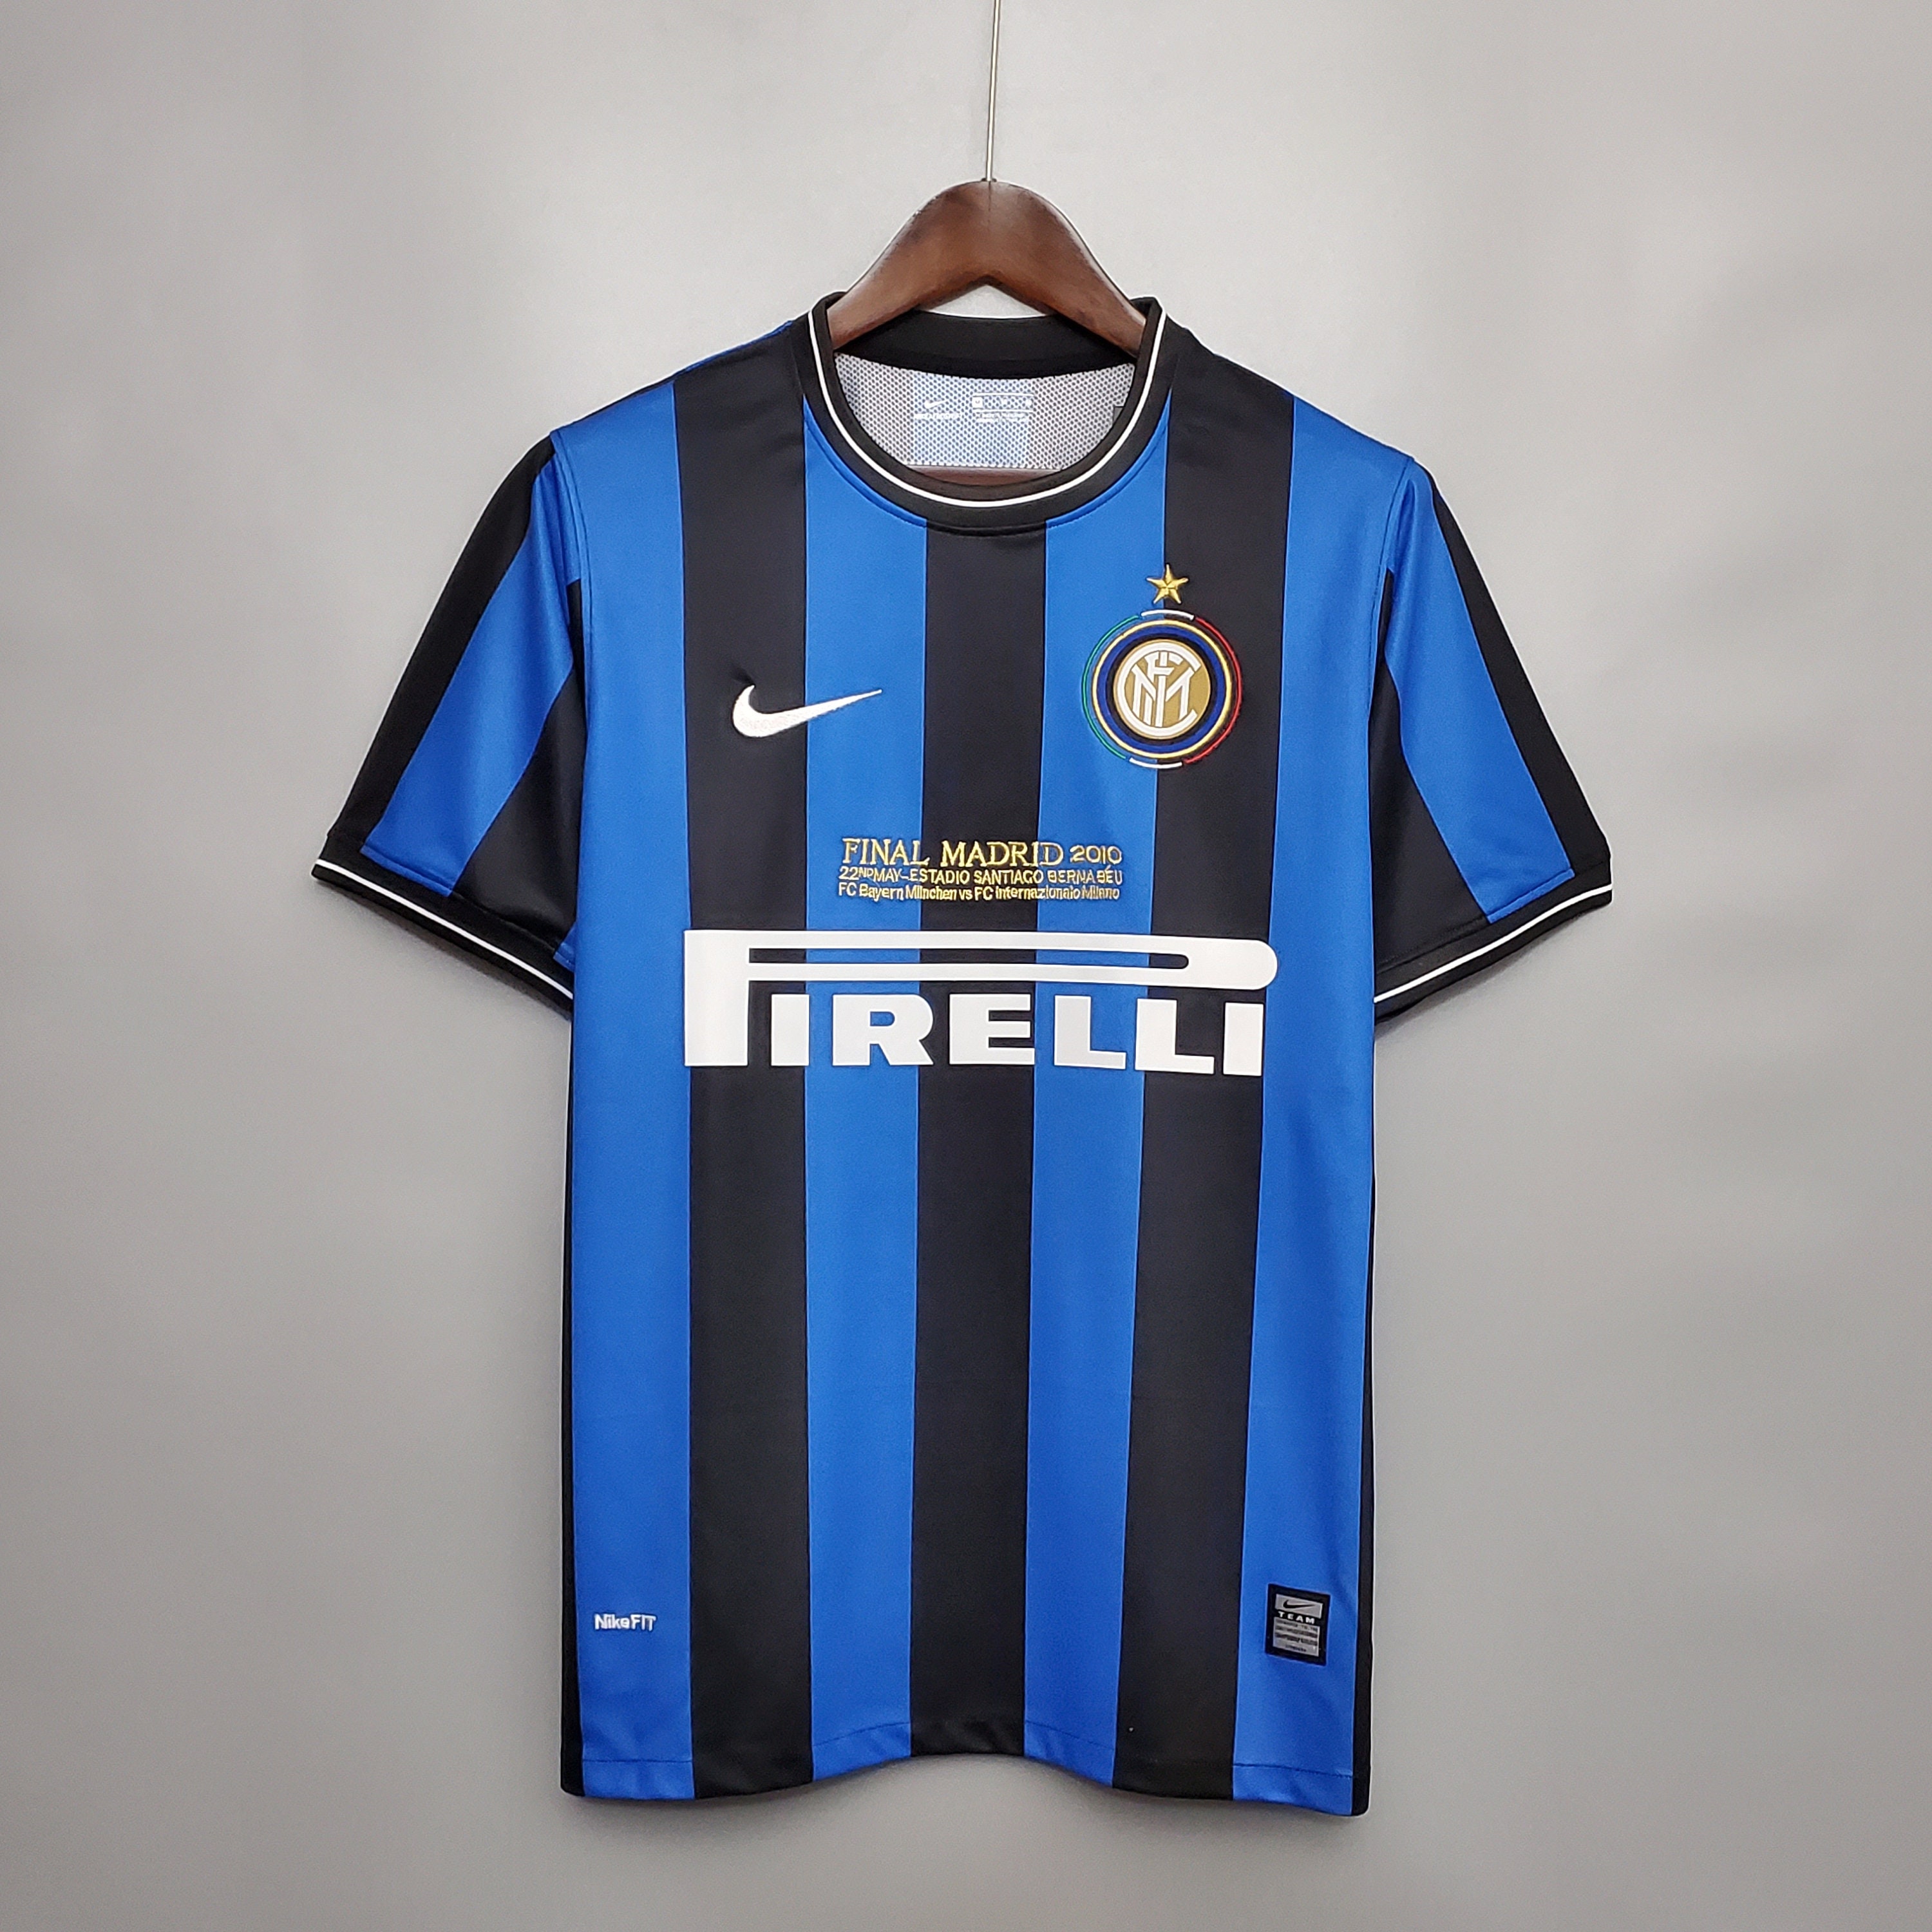 Inter Milan away kit for 2010-11.  Milan, Inter milan, Sports jersey